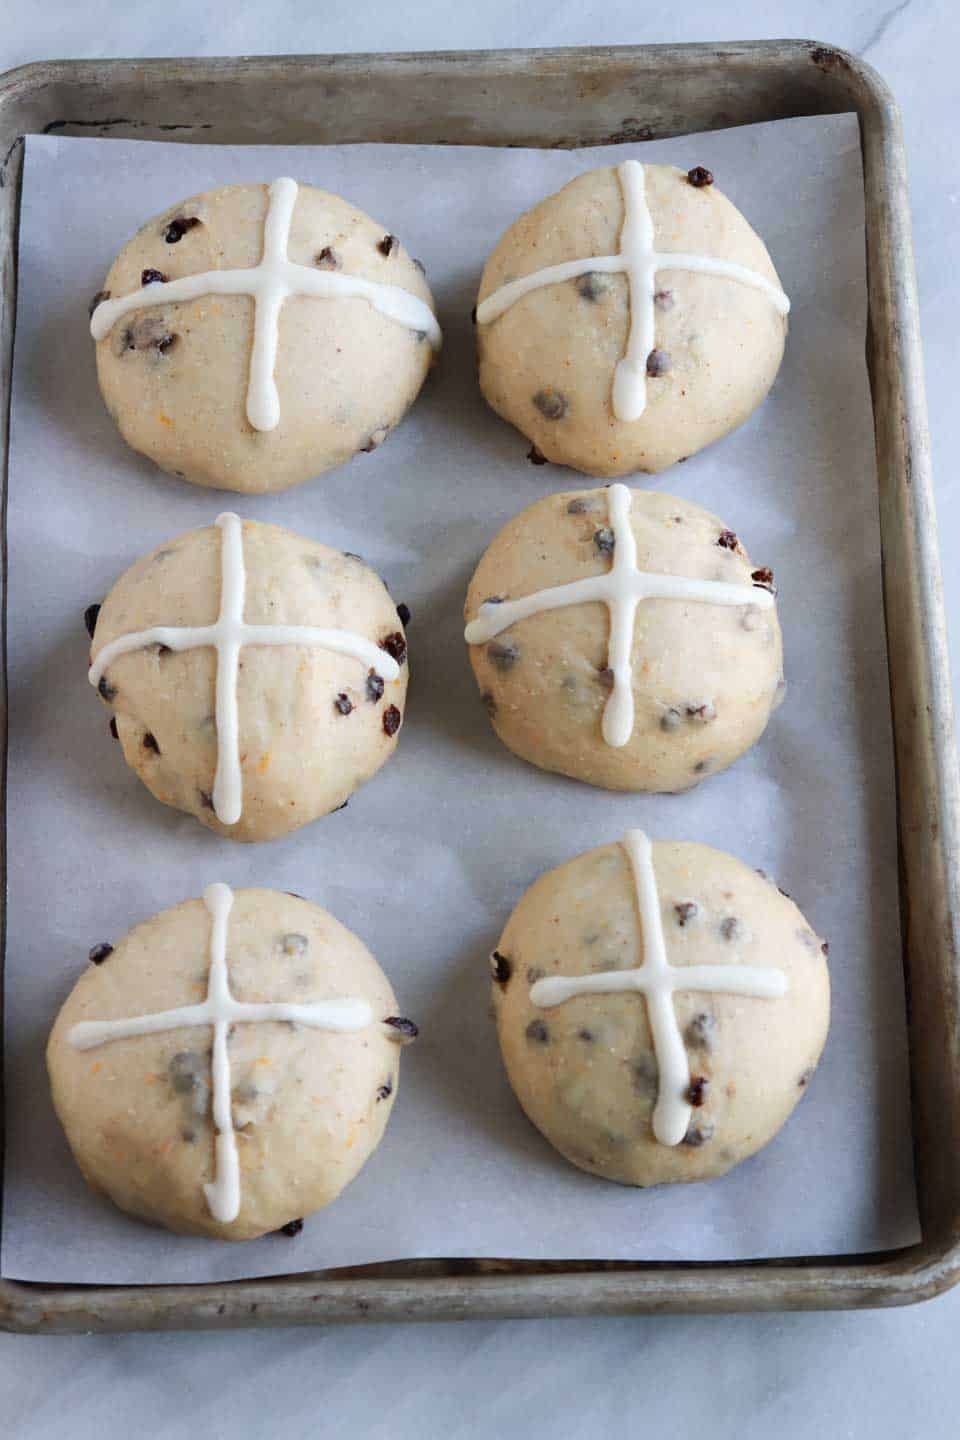 buns with the flour cross.